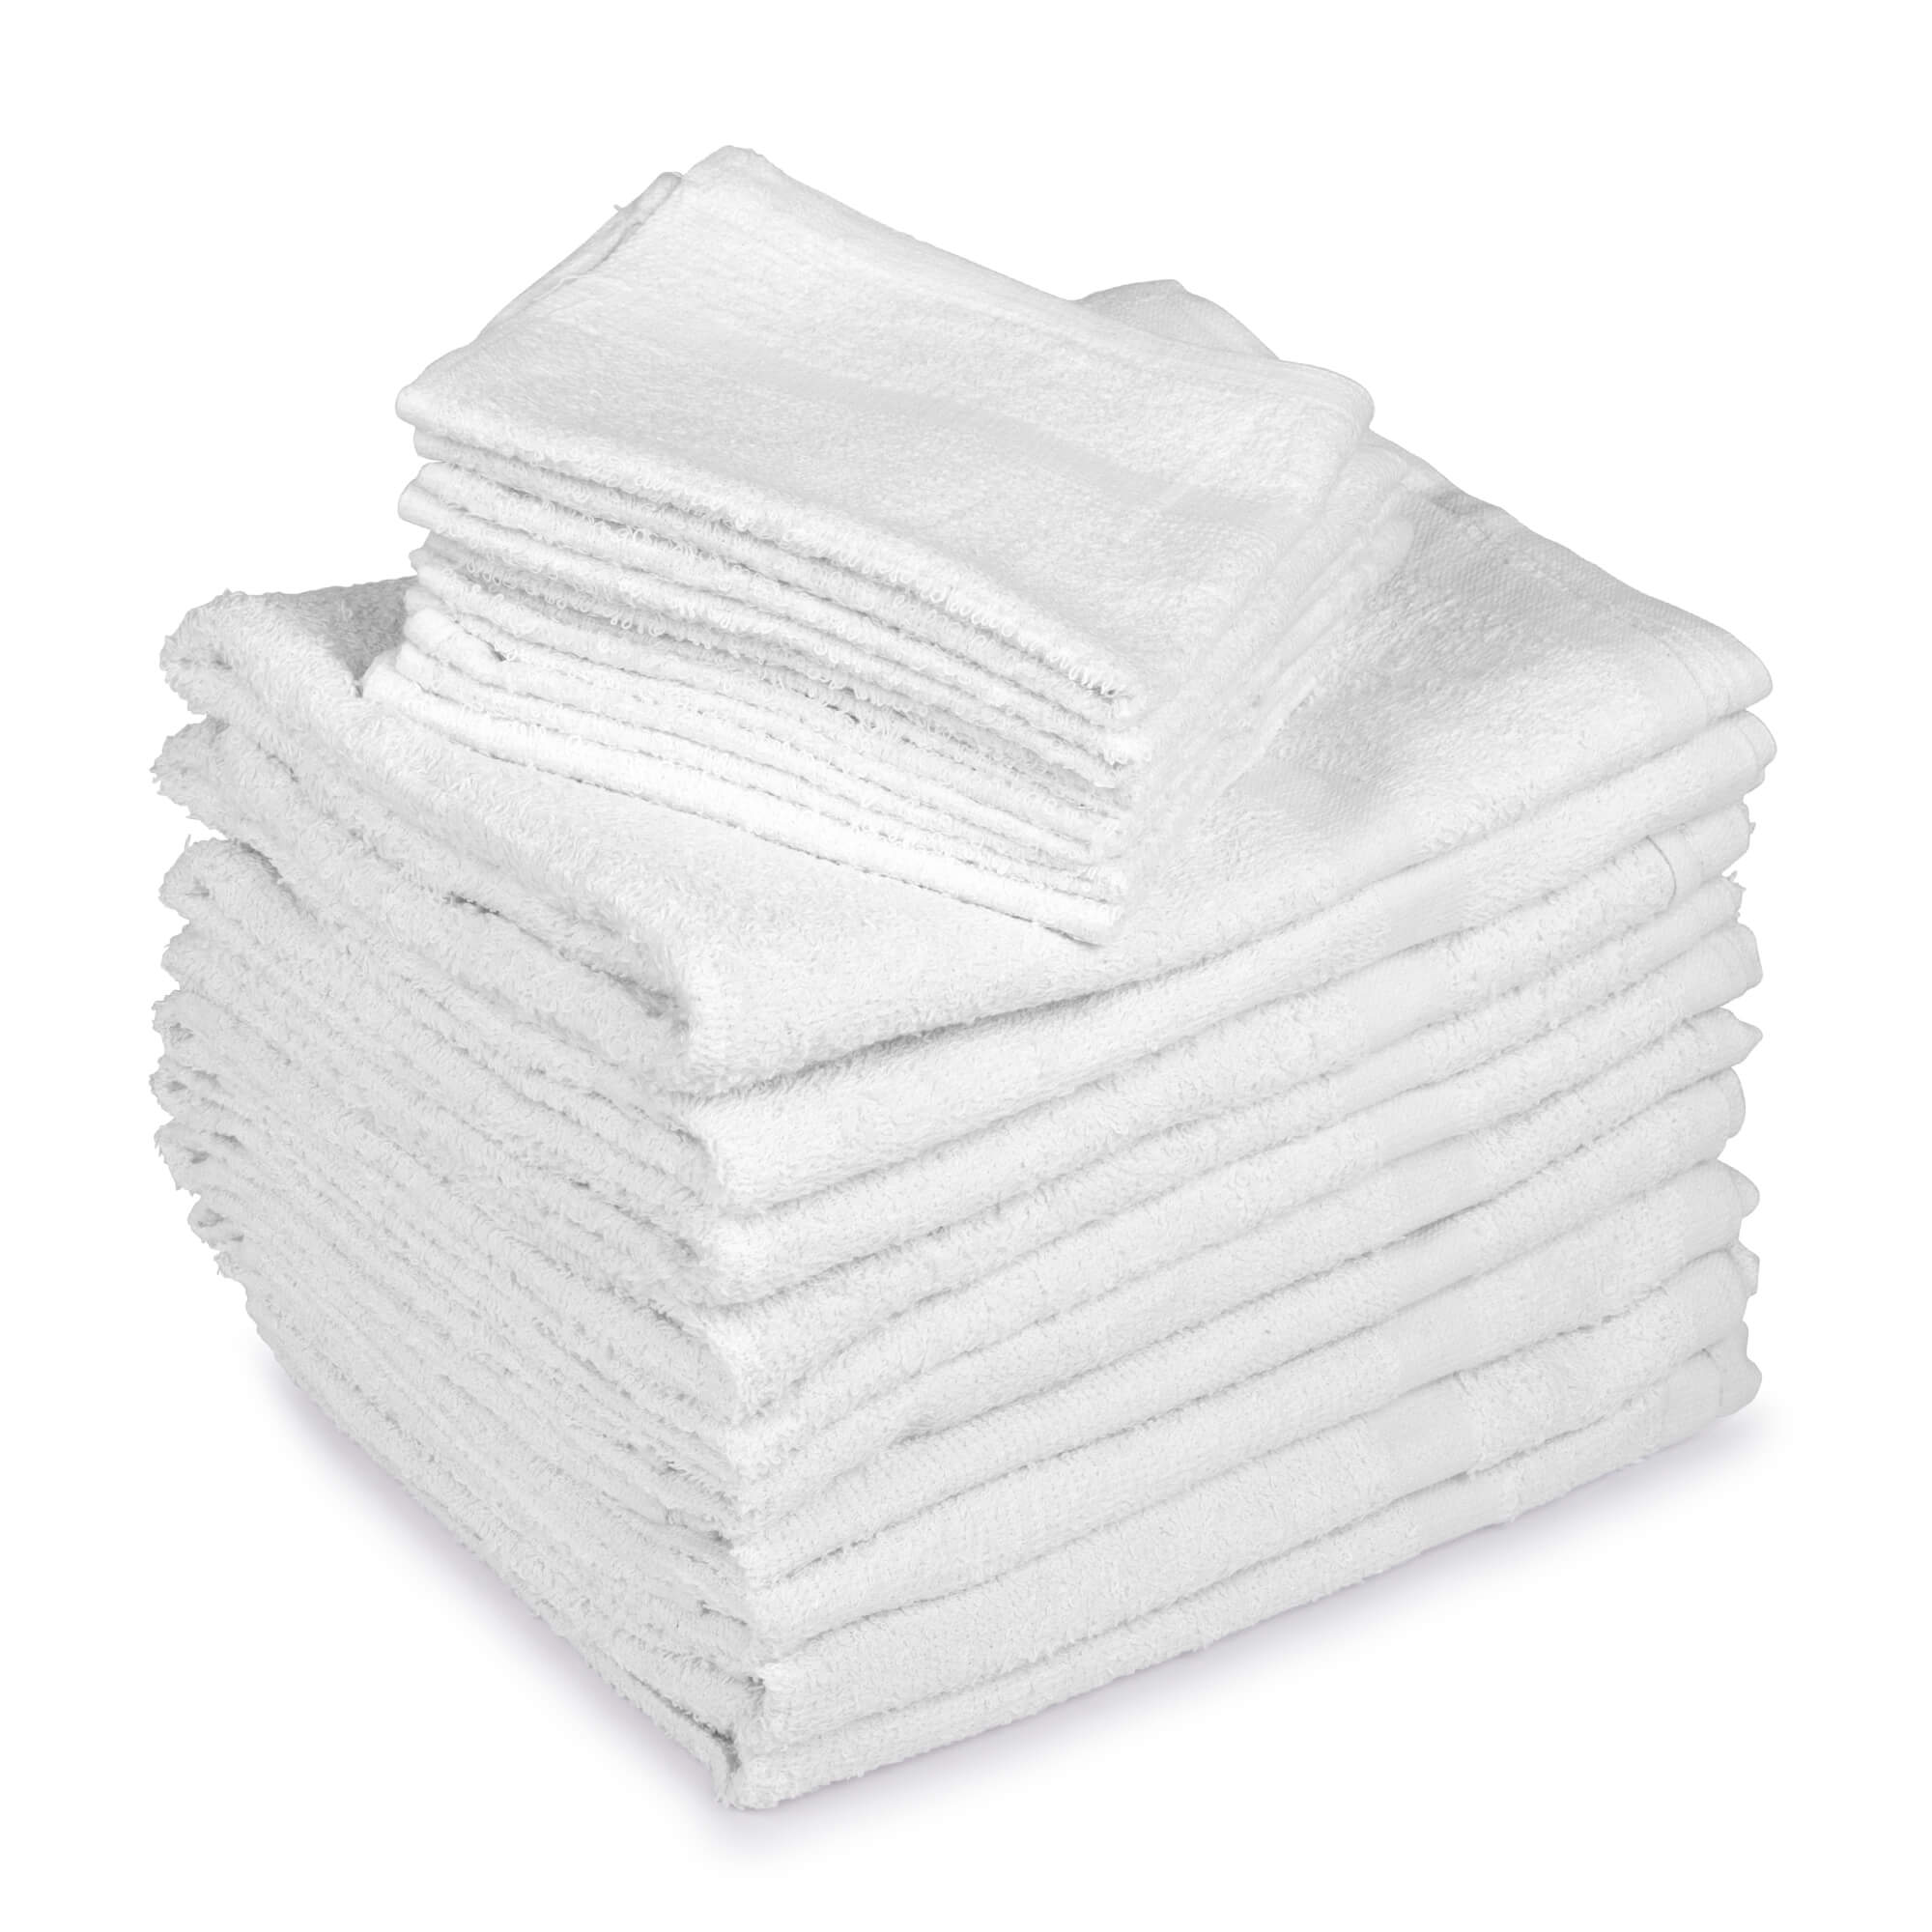 Economy Healthcare Towels, 10 Single